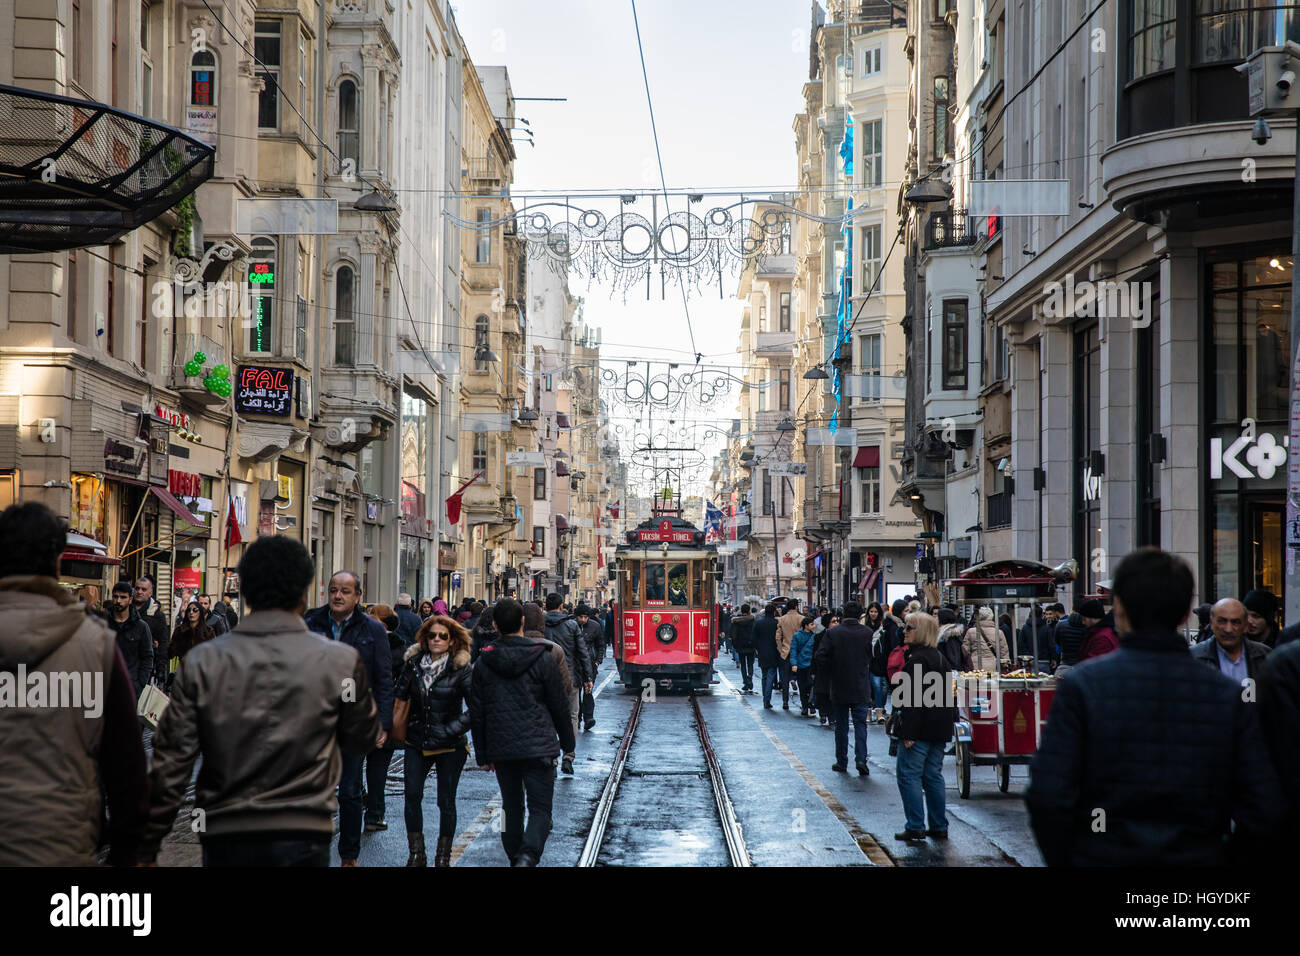 Le célèbre tramway rouge sur l'Istiklal à Istanbul, Turquie. Banque D'Images